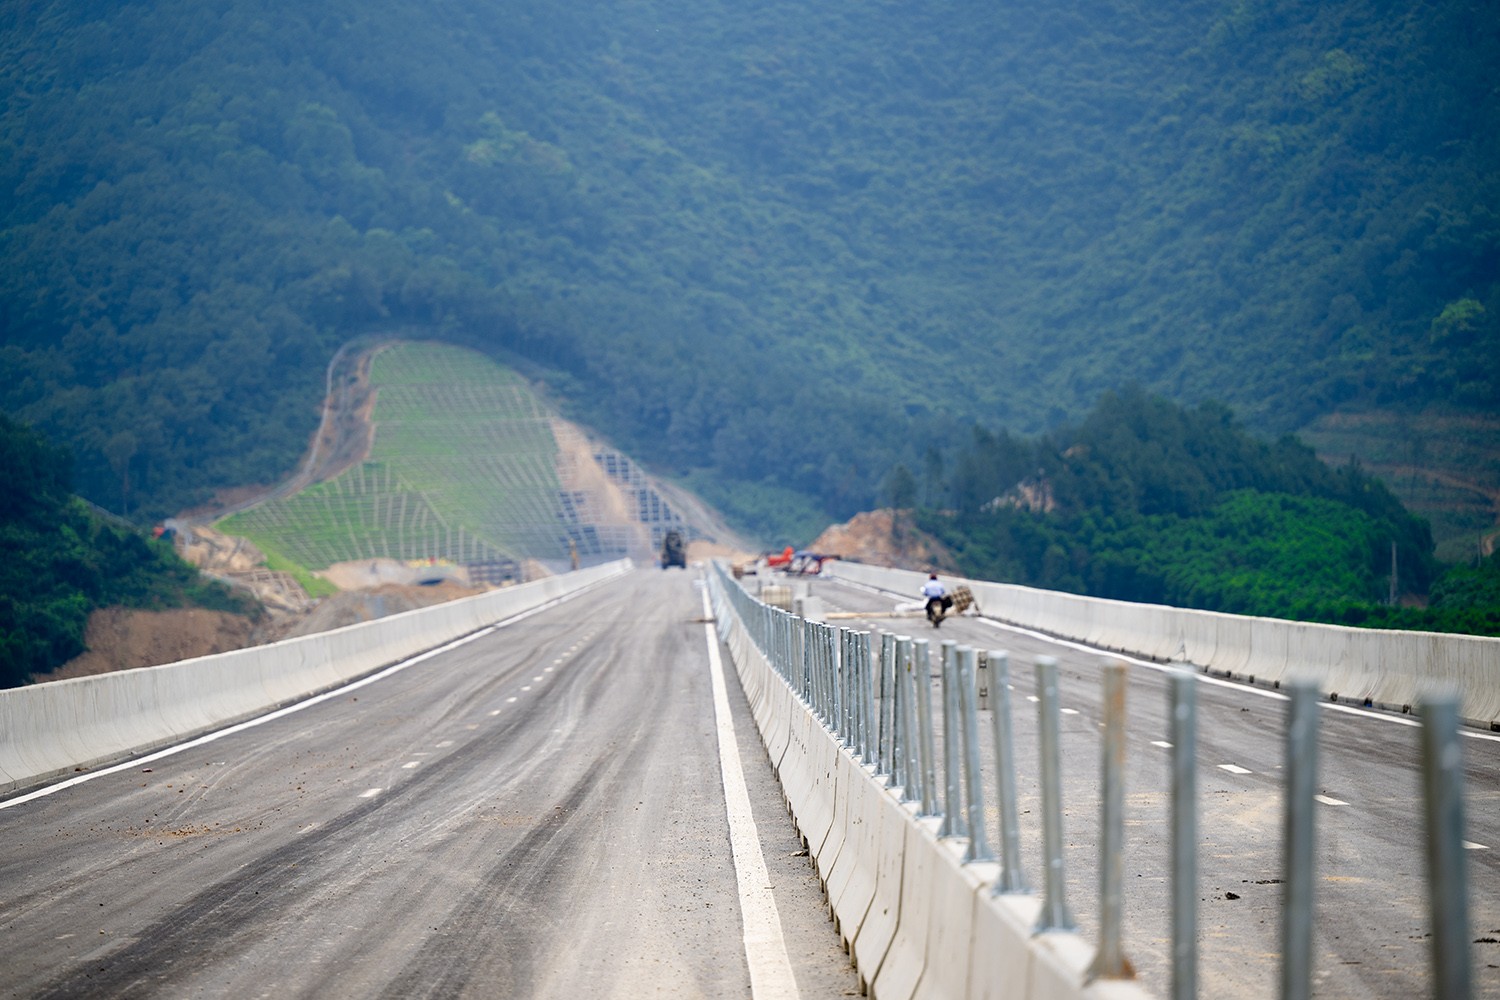 Choáng ngợp với cầu cạn cao hàng chục mét chạy qua núi non, hồ đập ở Nghệ An - 12